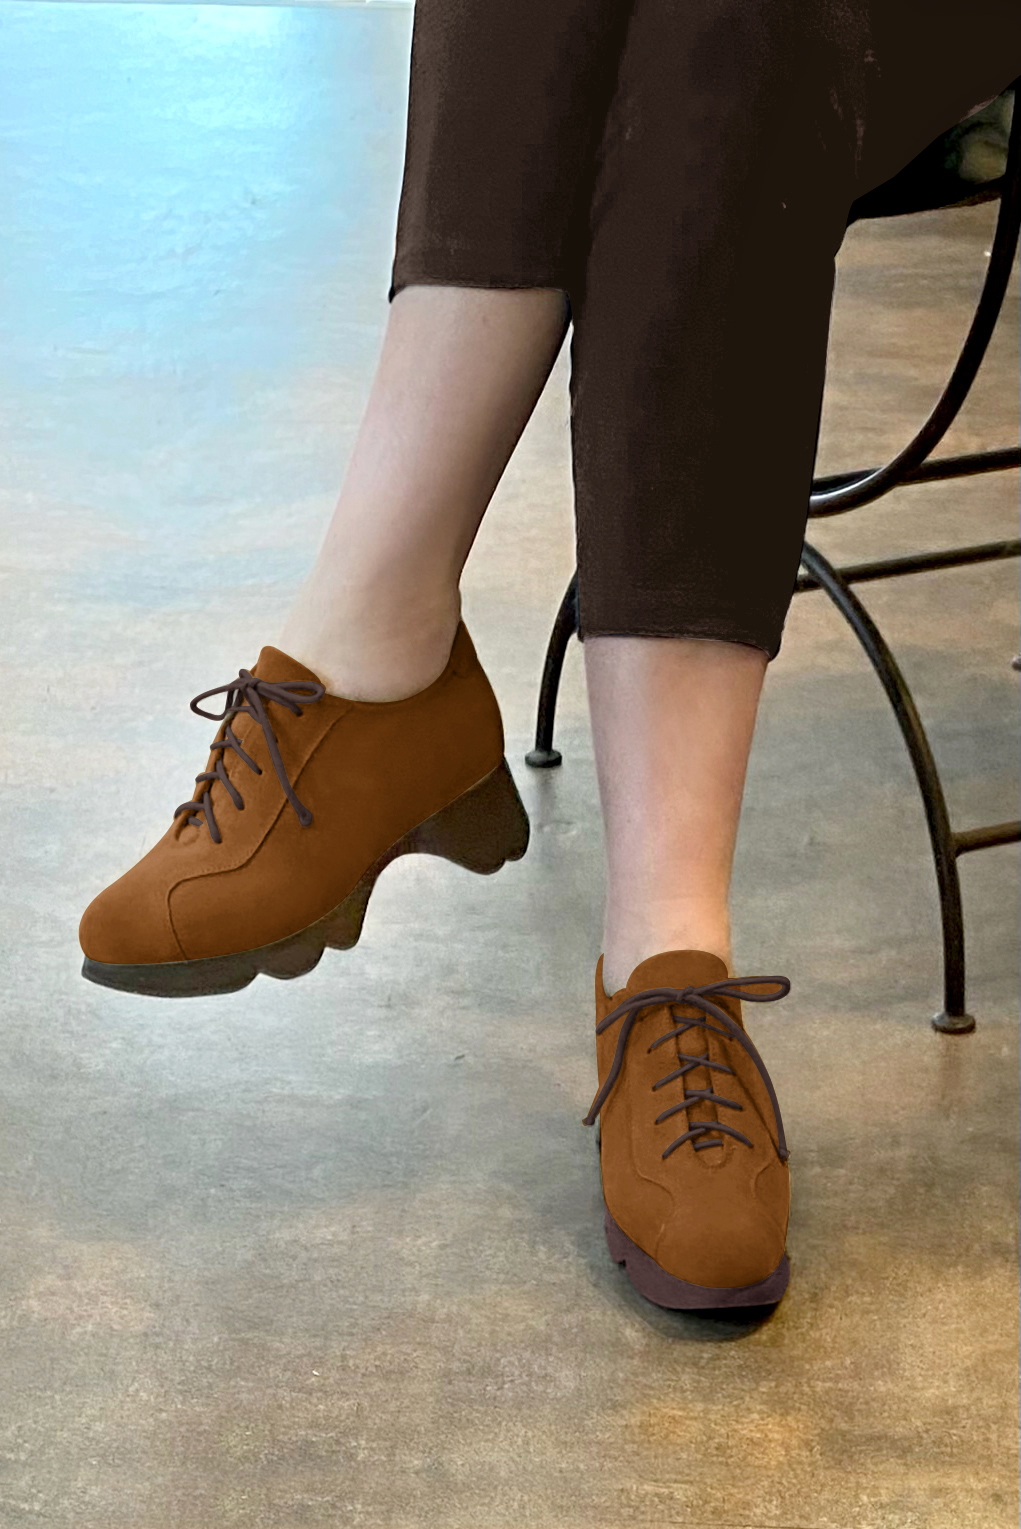 Chaussure femme à lacets : Derby sport couleur marron caramel.. Vue porté - Florence KOOIJMAN